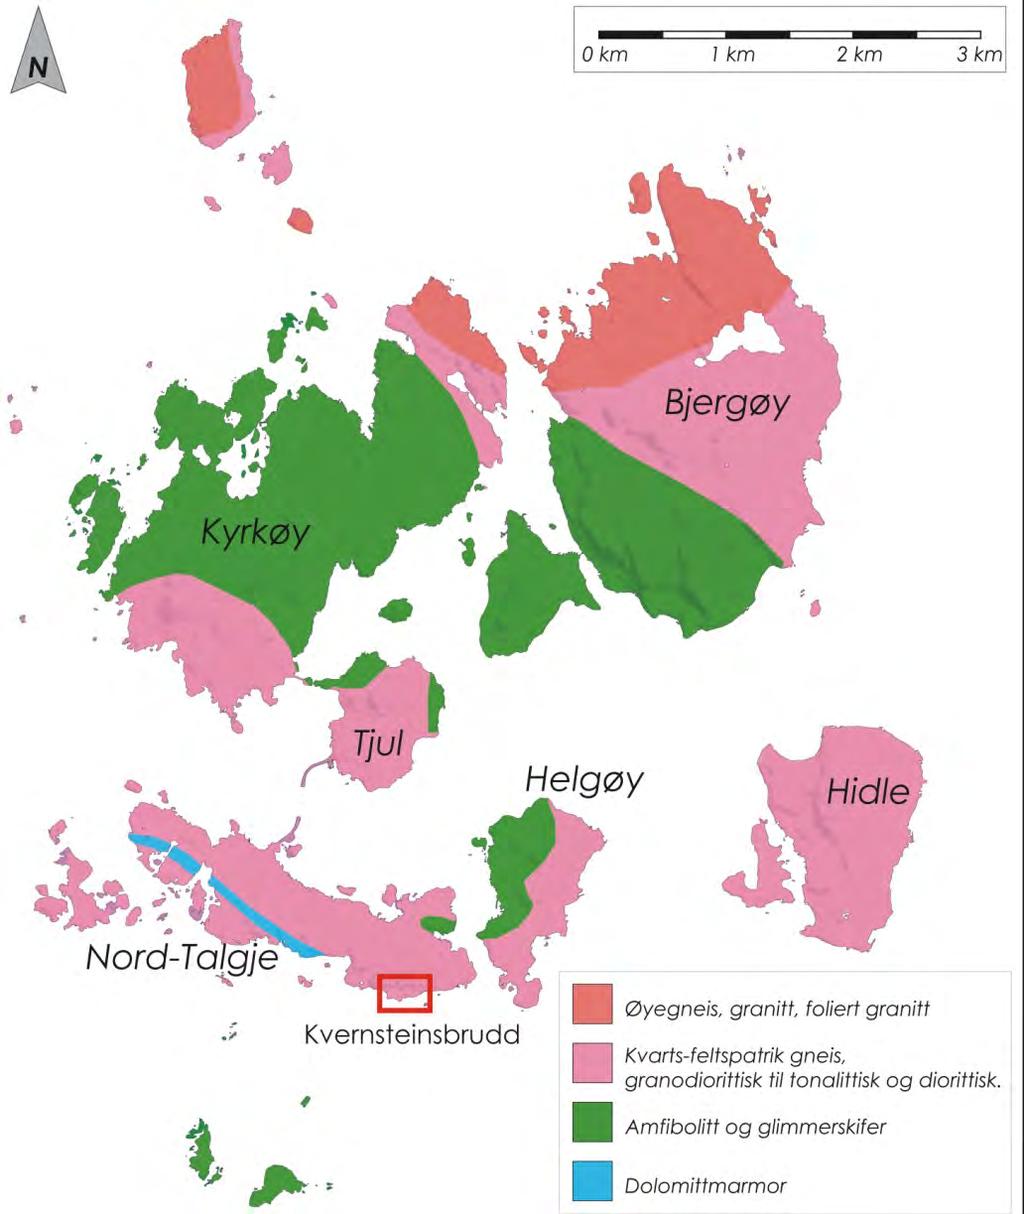 Geologi Regional geologi Nord-Talgje og de sentrale øyene i det indre av Boknafjorden ble første gang petrografisk kartlagt av Müller & Wurm i perioden 1967-1968 (Müller & Wurm 1970).